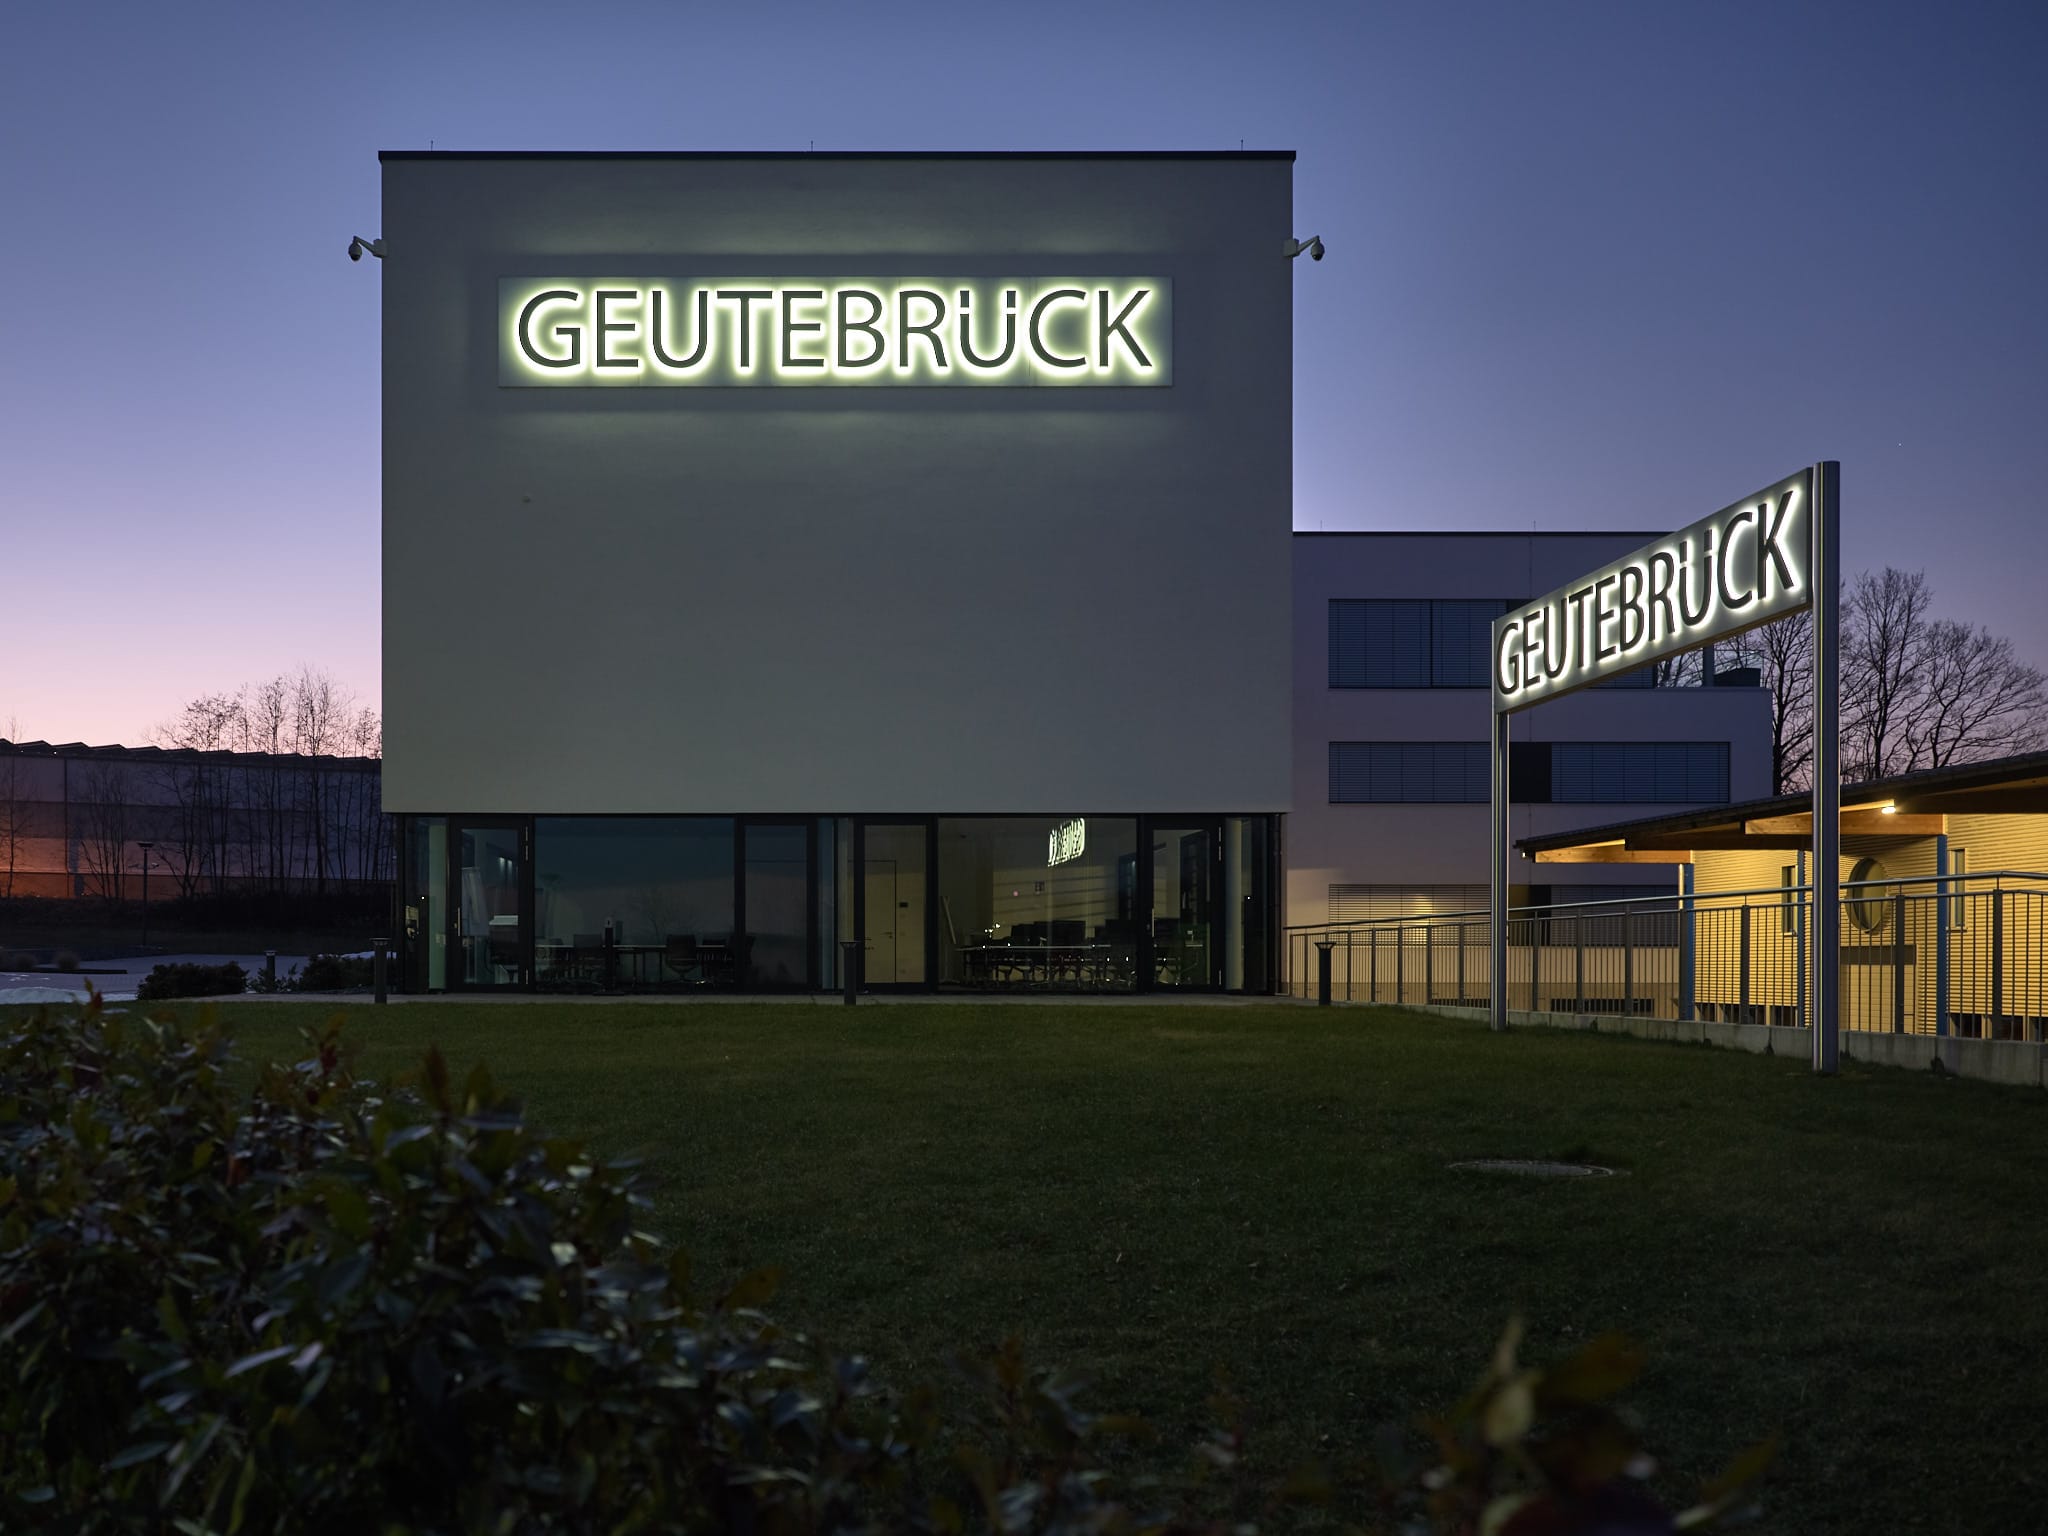 Großflächige Leuchtreklame Geutebrück